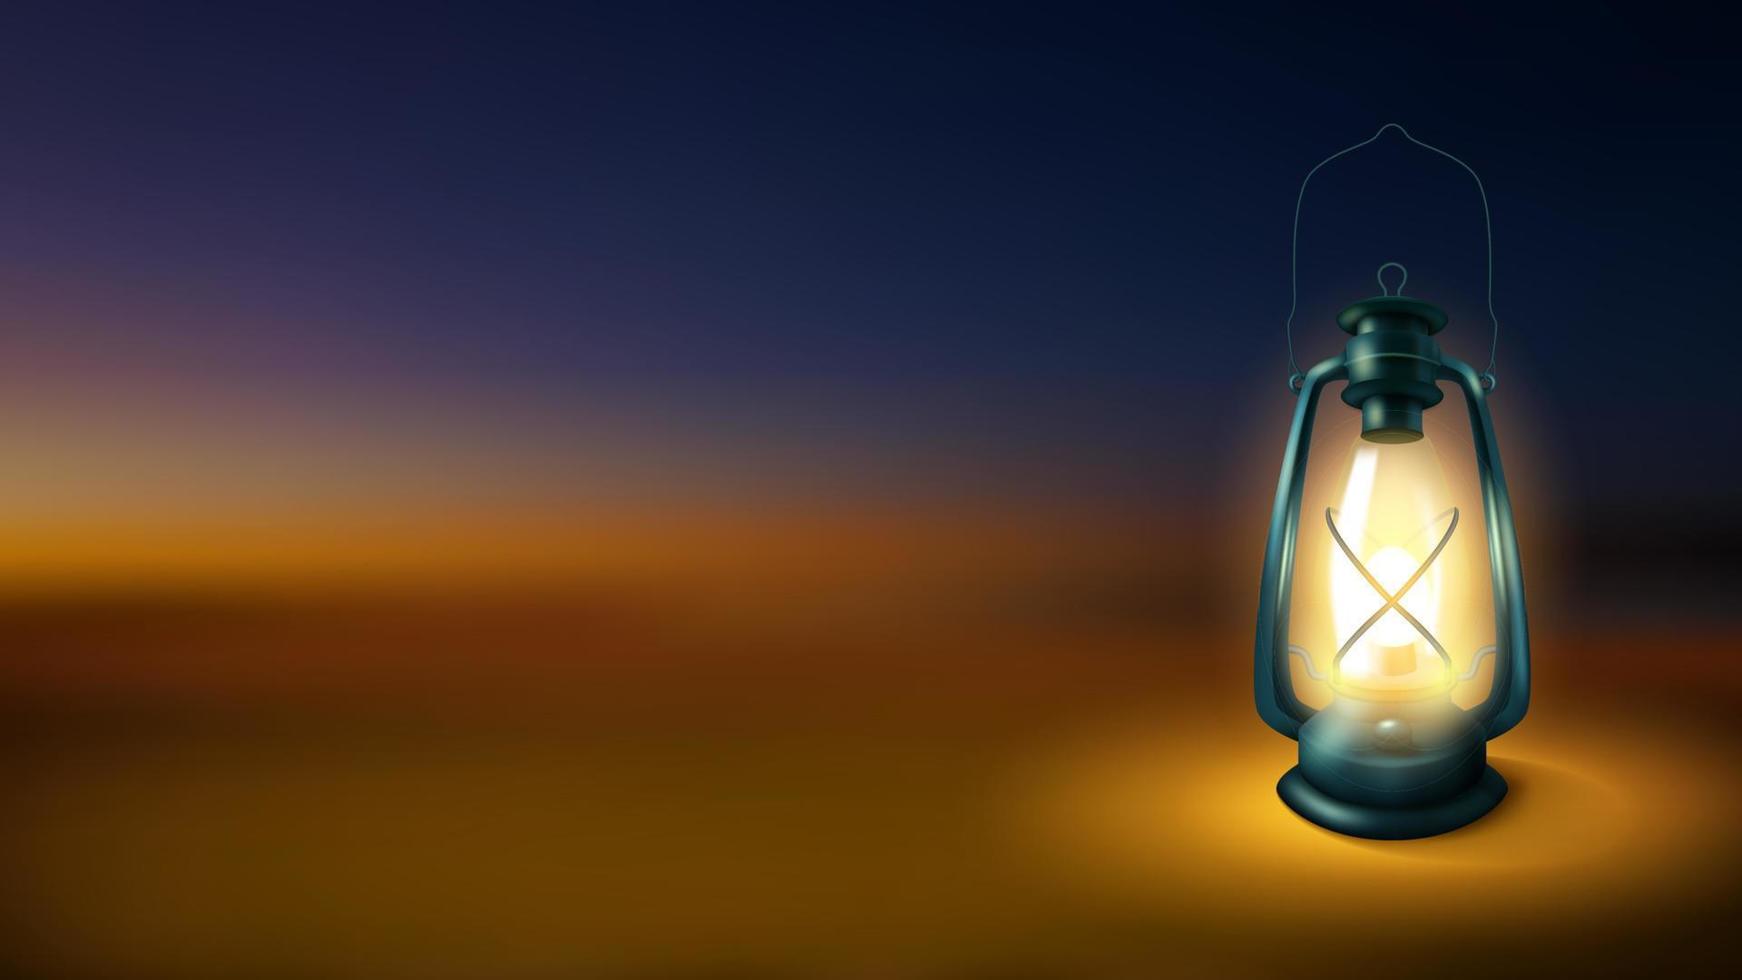 lanterne réaliste isolée sur fond flou de nuit, lampe au kérosène illuminée. illustration vectorielle vecteur